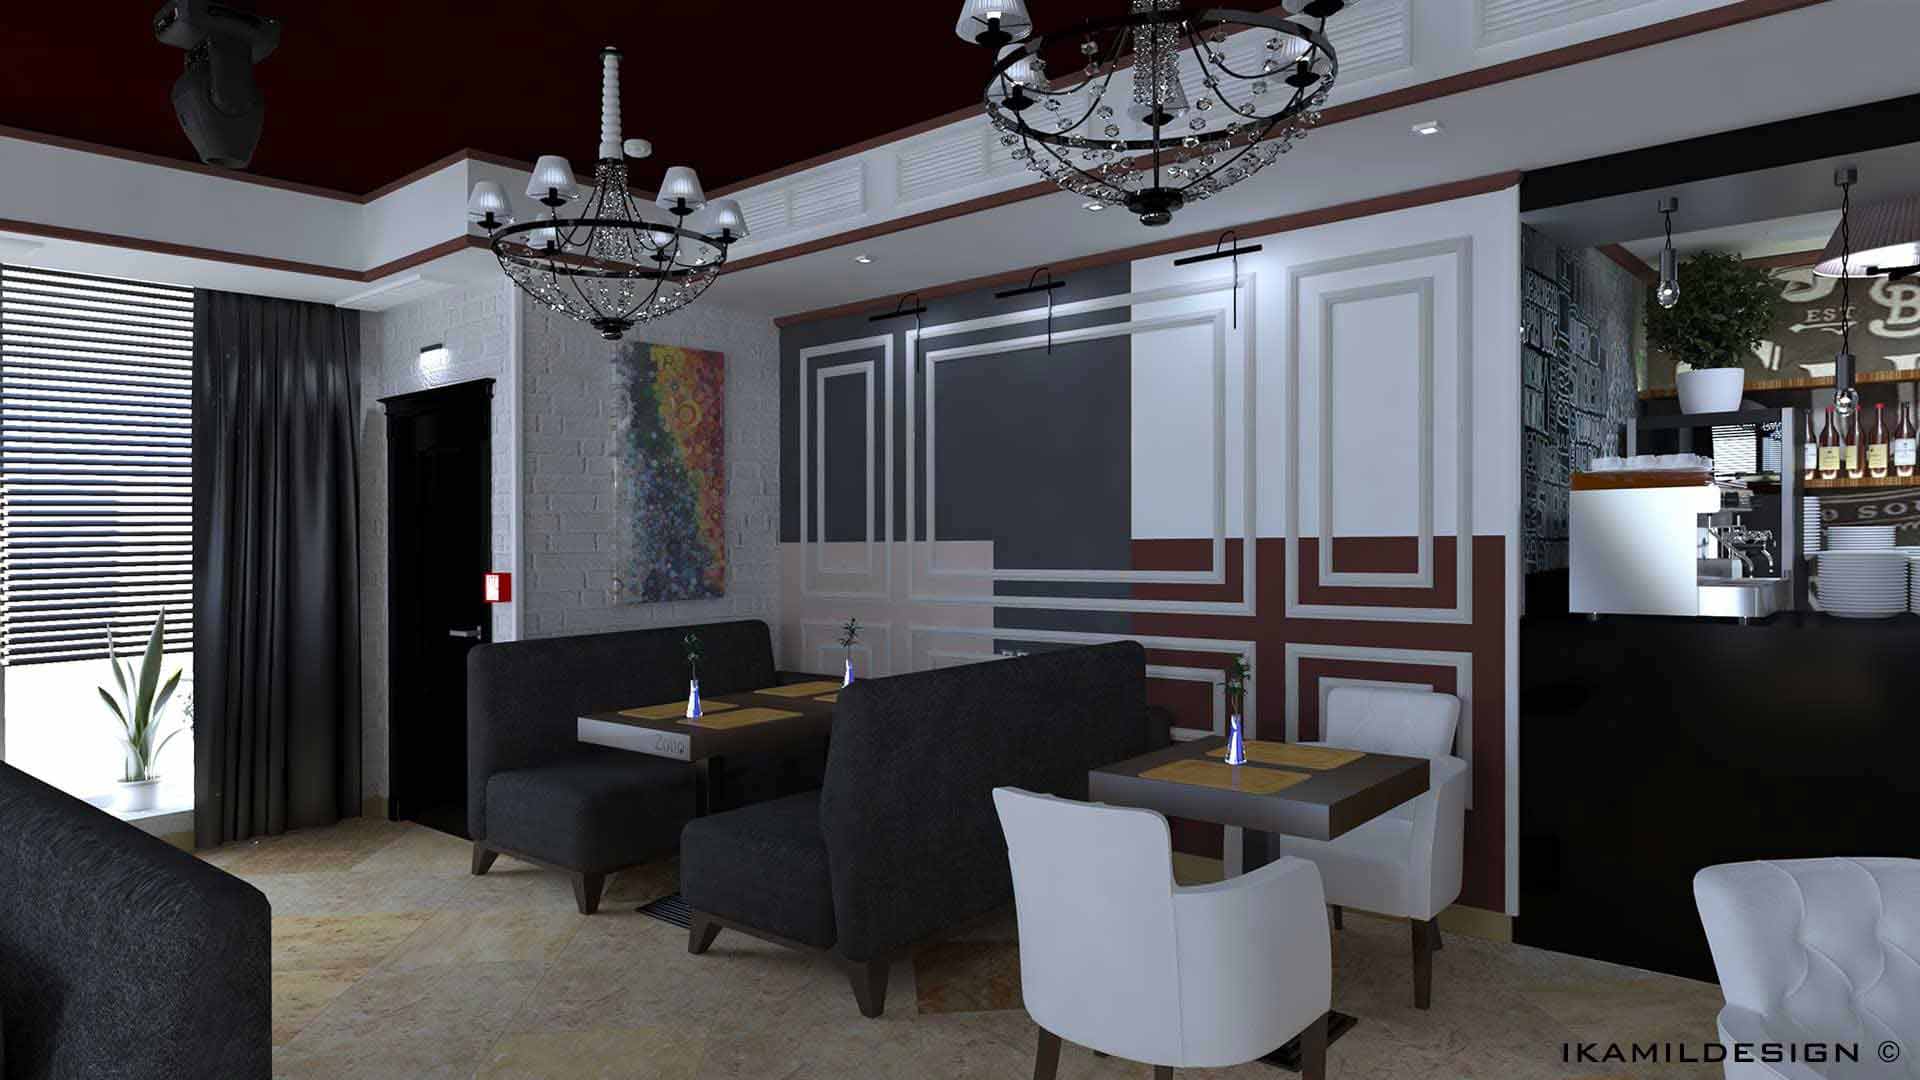 проектирование караоке, ресторанов и кафе. ikamildesign